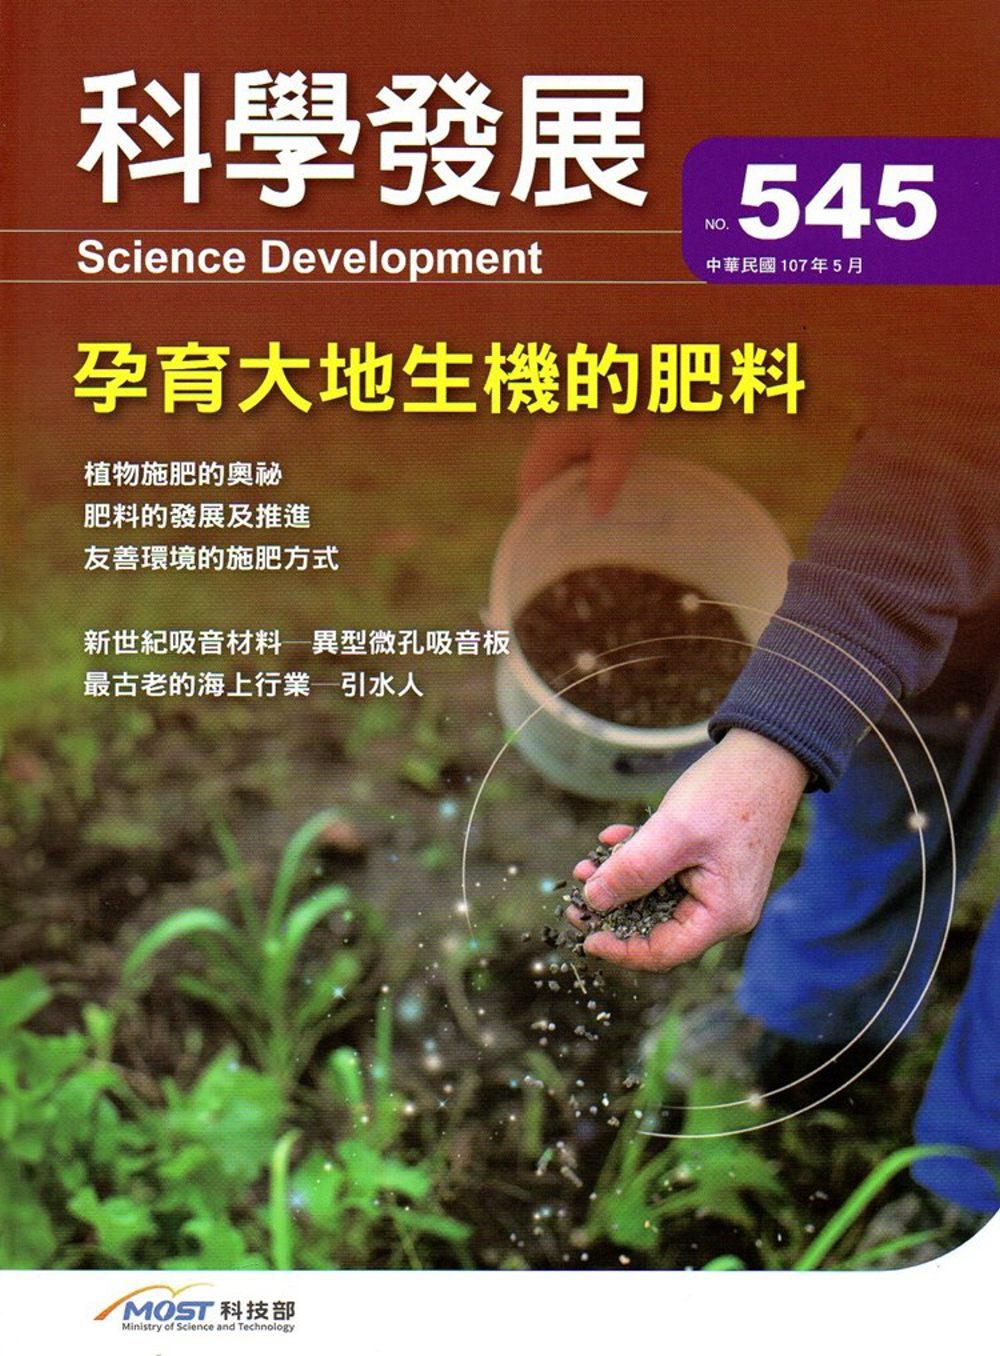 科學發展月刊第545期(107/05)